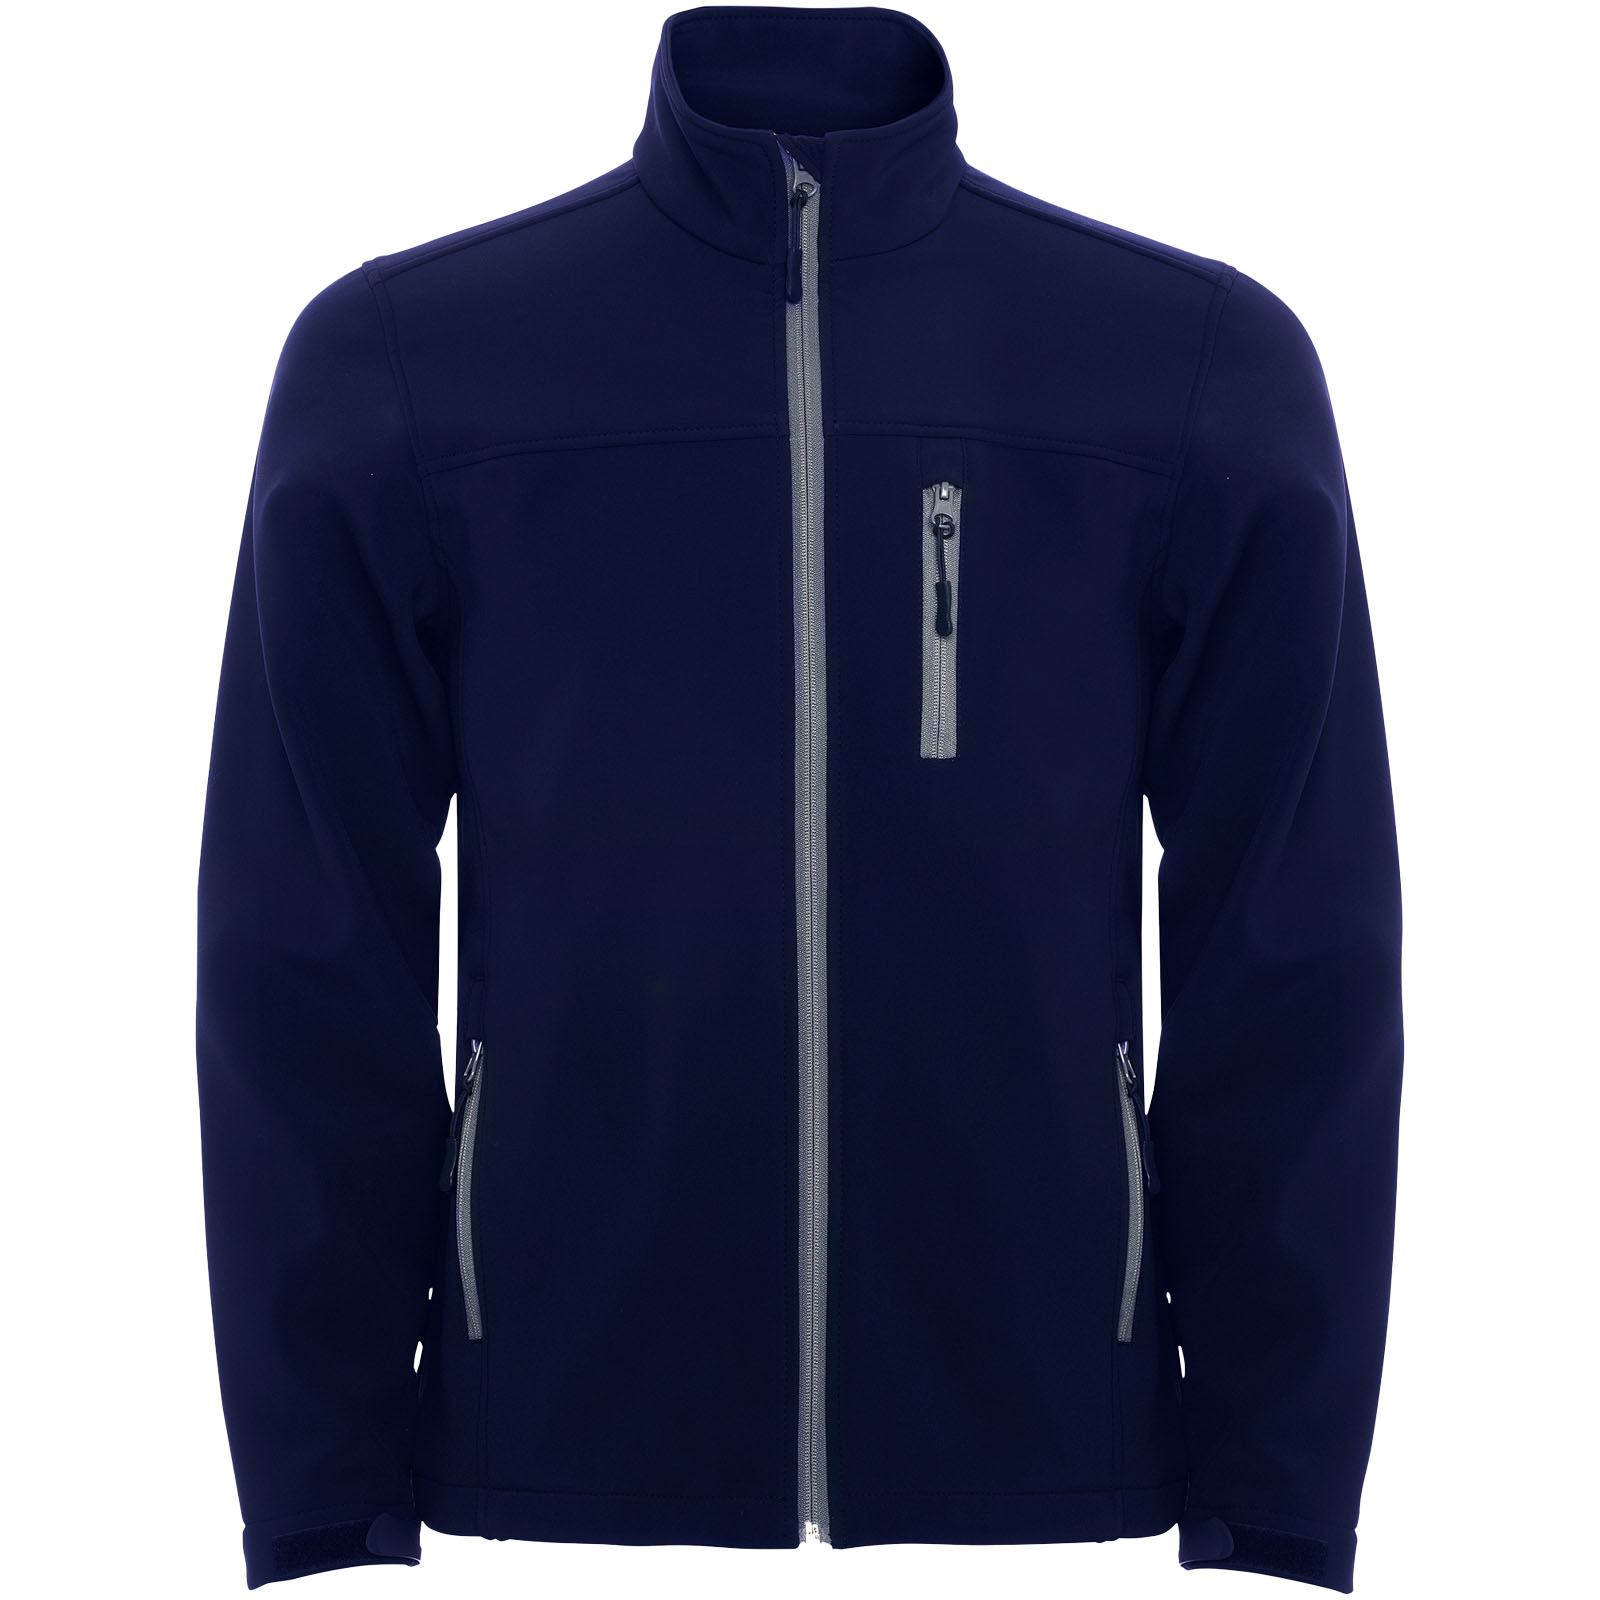 Advertising Jackets - Antartida men's softshell jacket